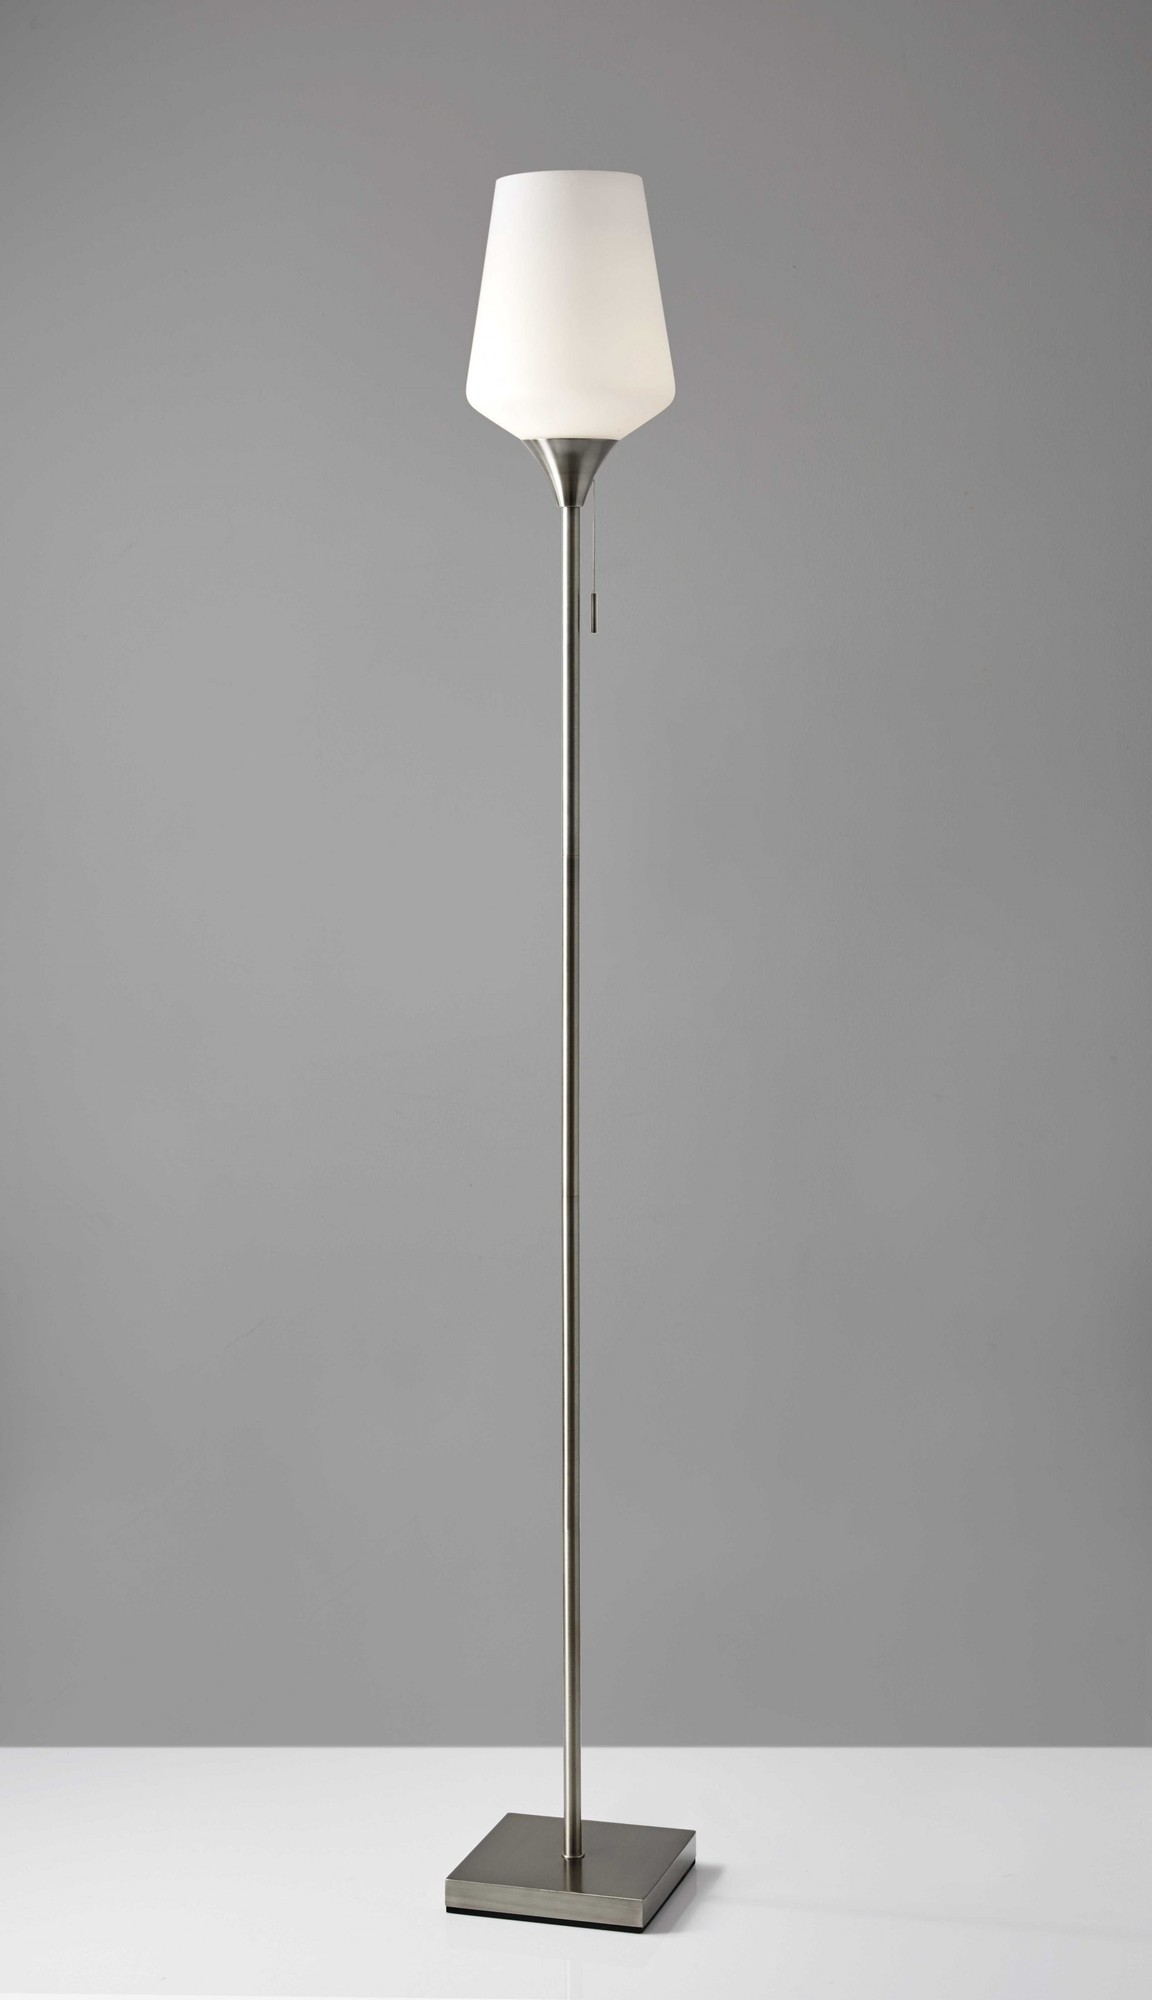 8.5" X 8.5" X 71" Brushed Steel Glass Metal Floor Lamp